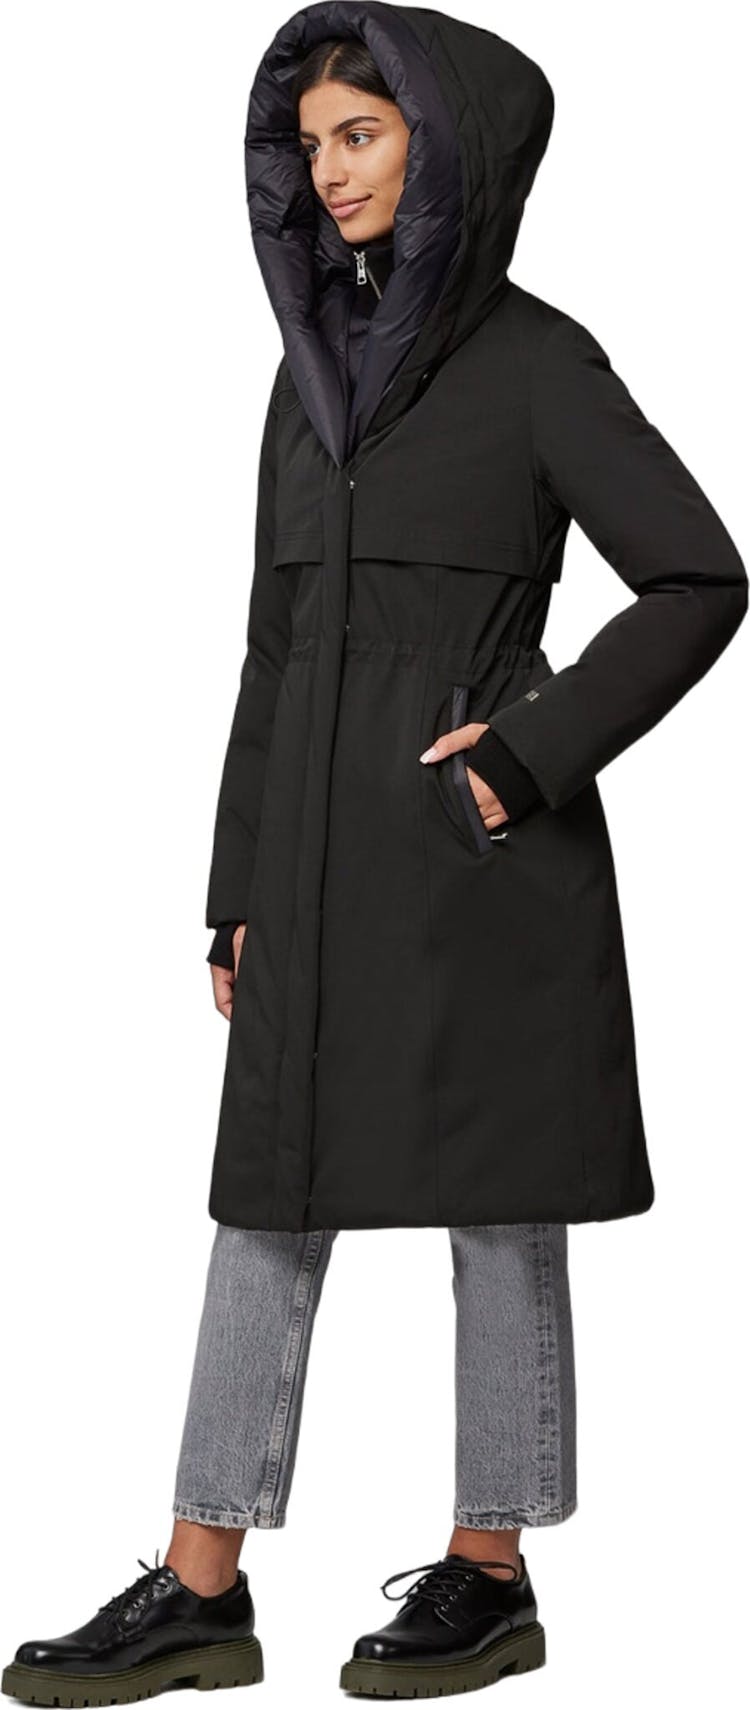 Numéro de l'image de la galerie de produits 3 pour le produit Manteau semi-ajusté en duvet classique avec capuchon Samara-TD - Femme